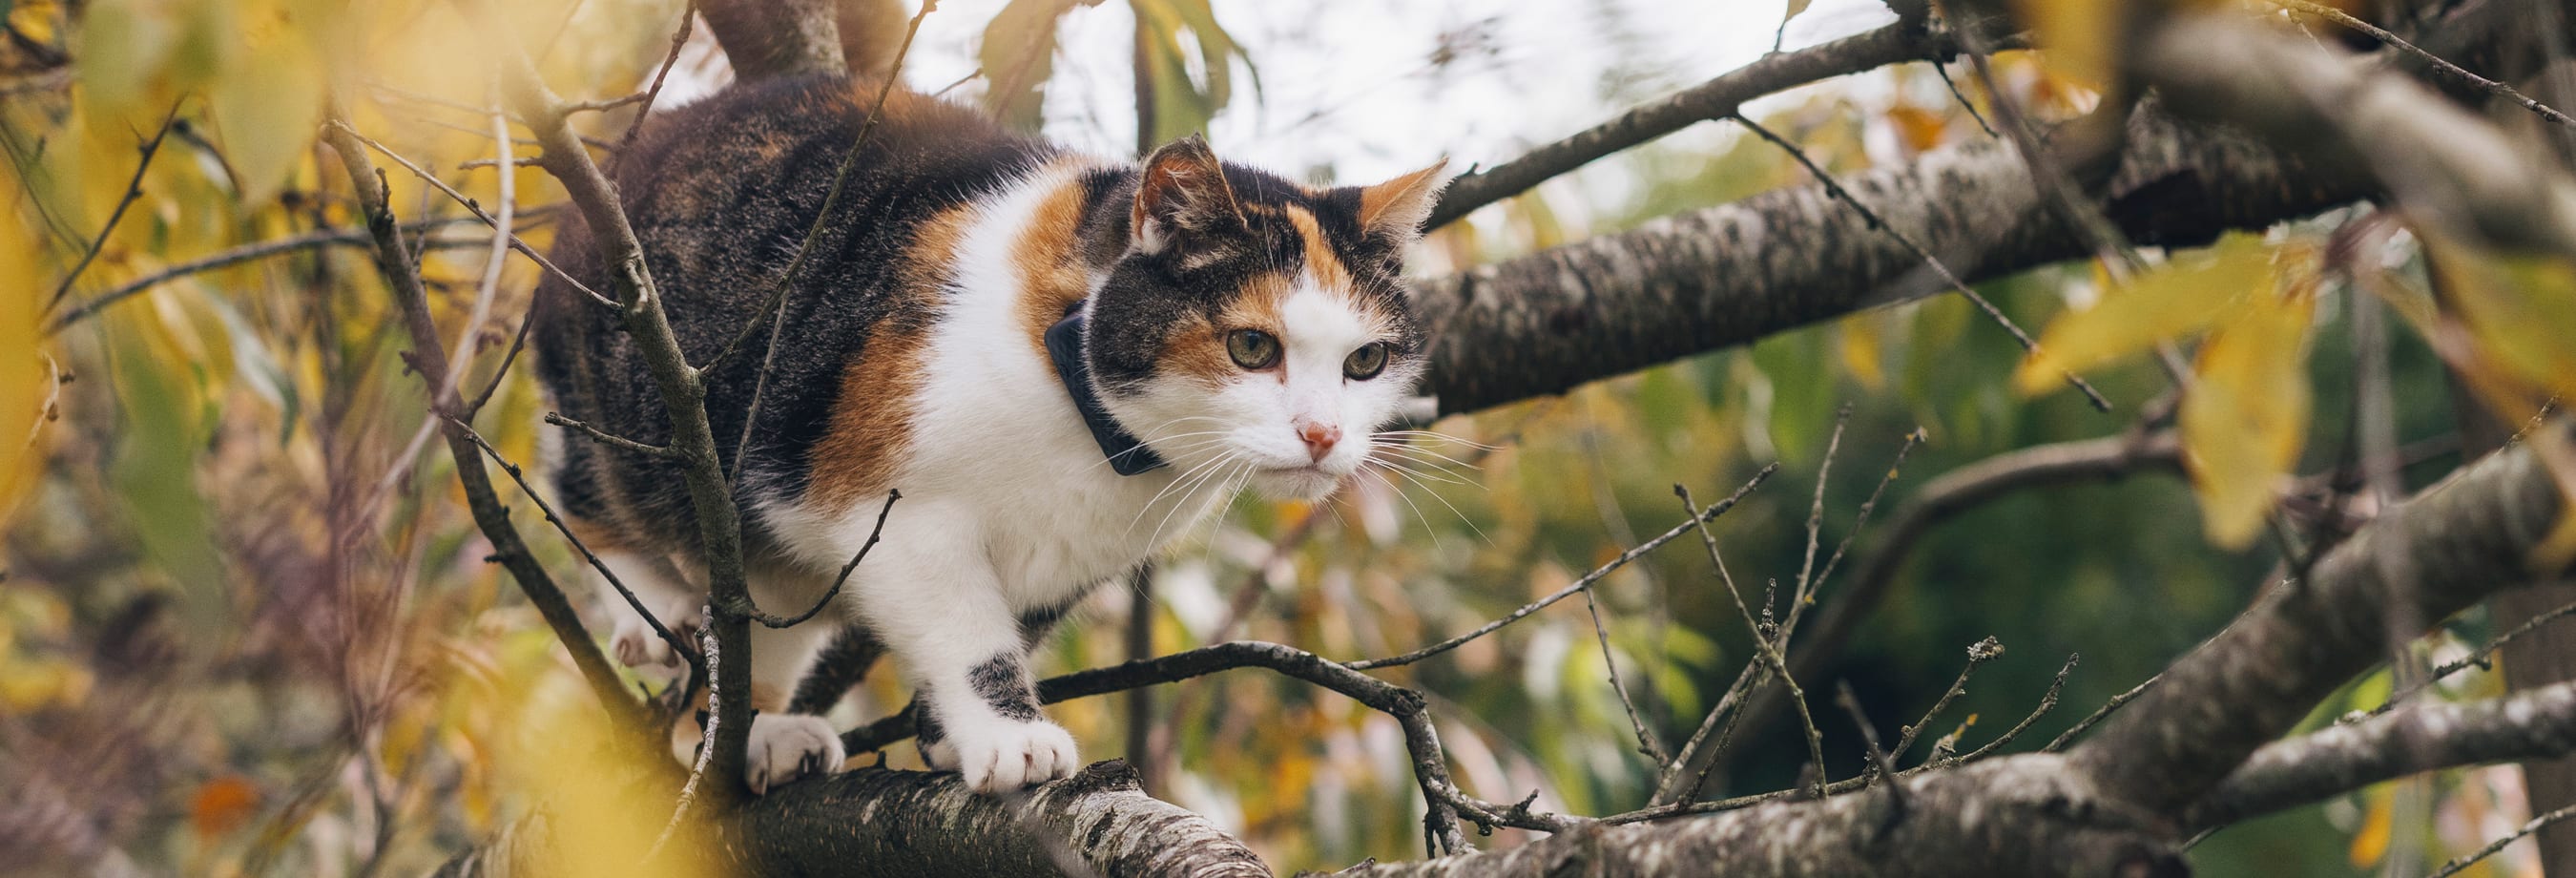 Cat walking in tree